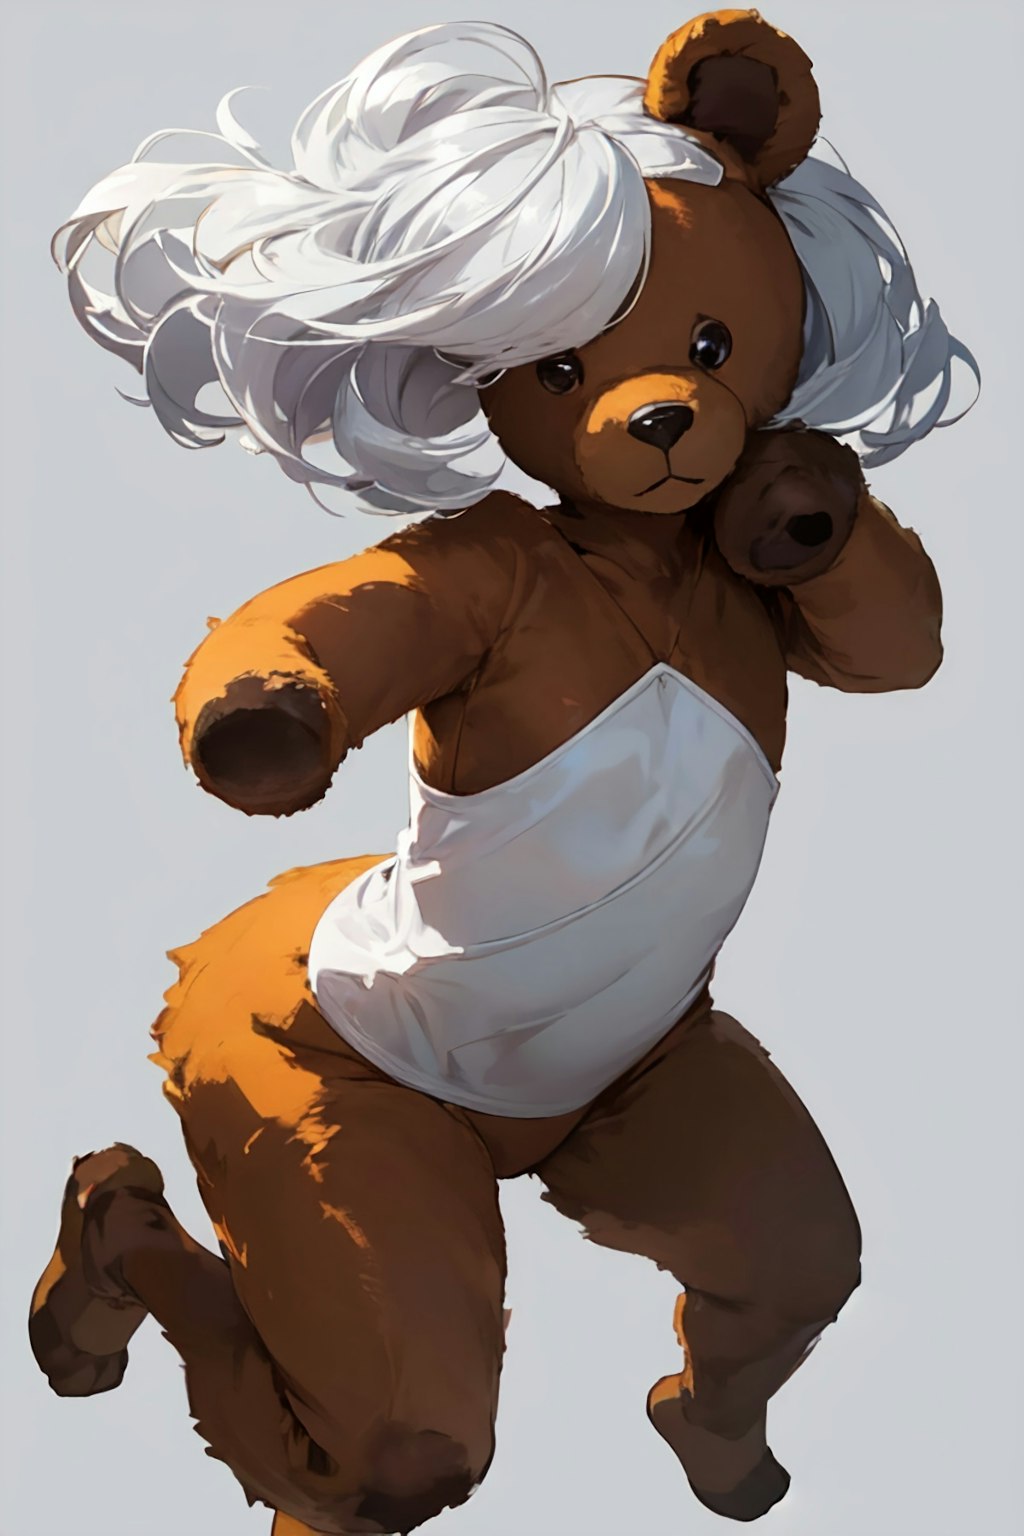 Silver-haired (teddy) bear